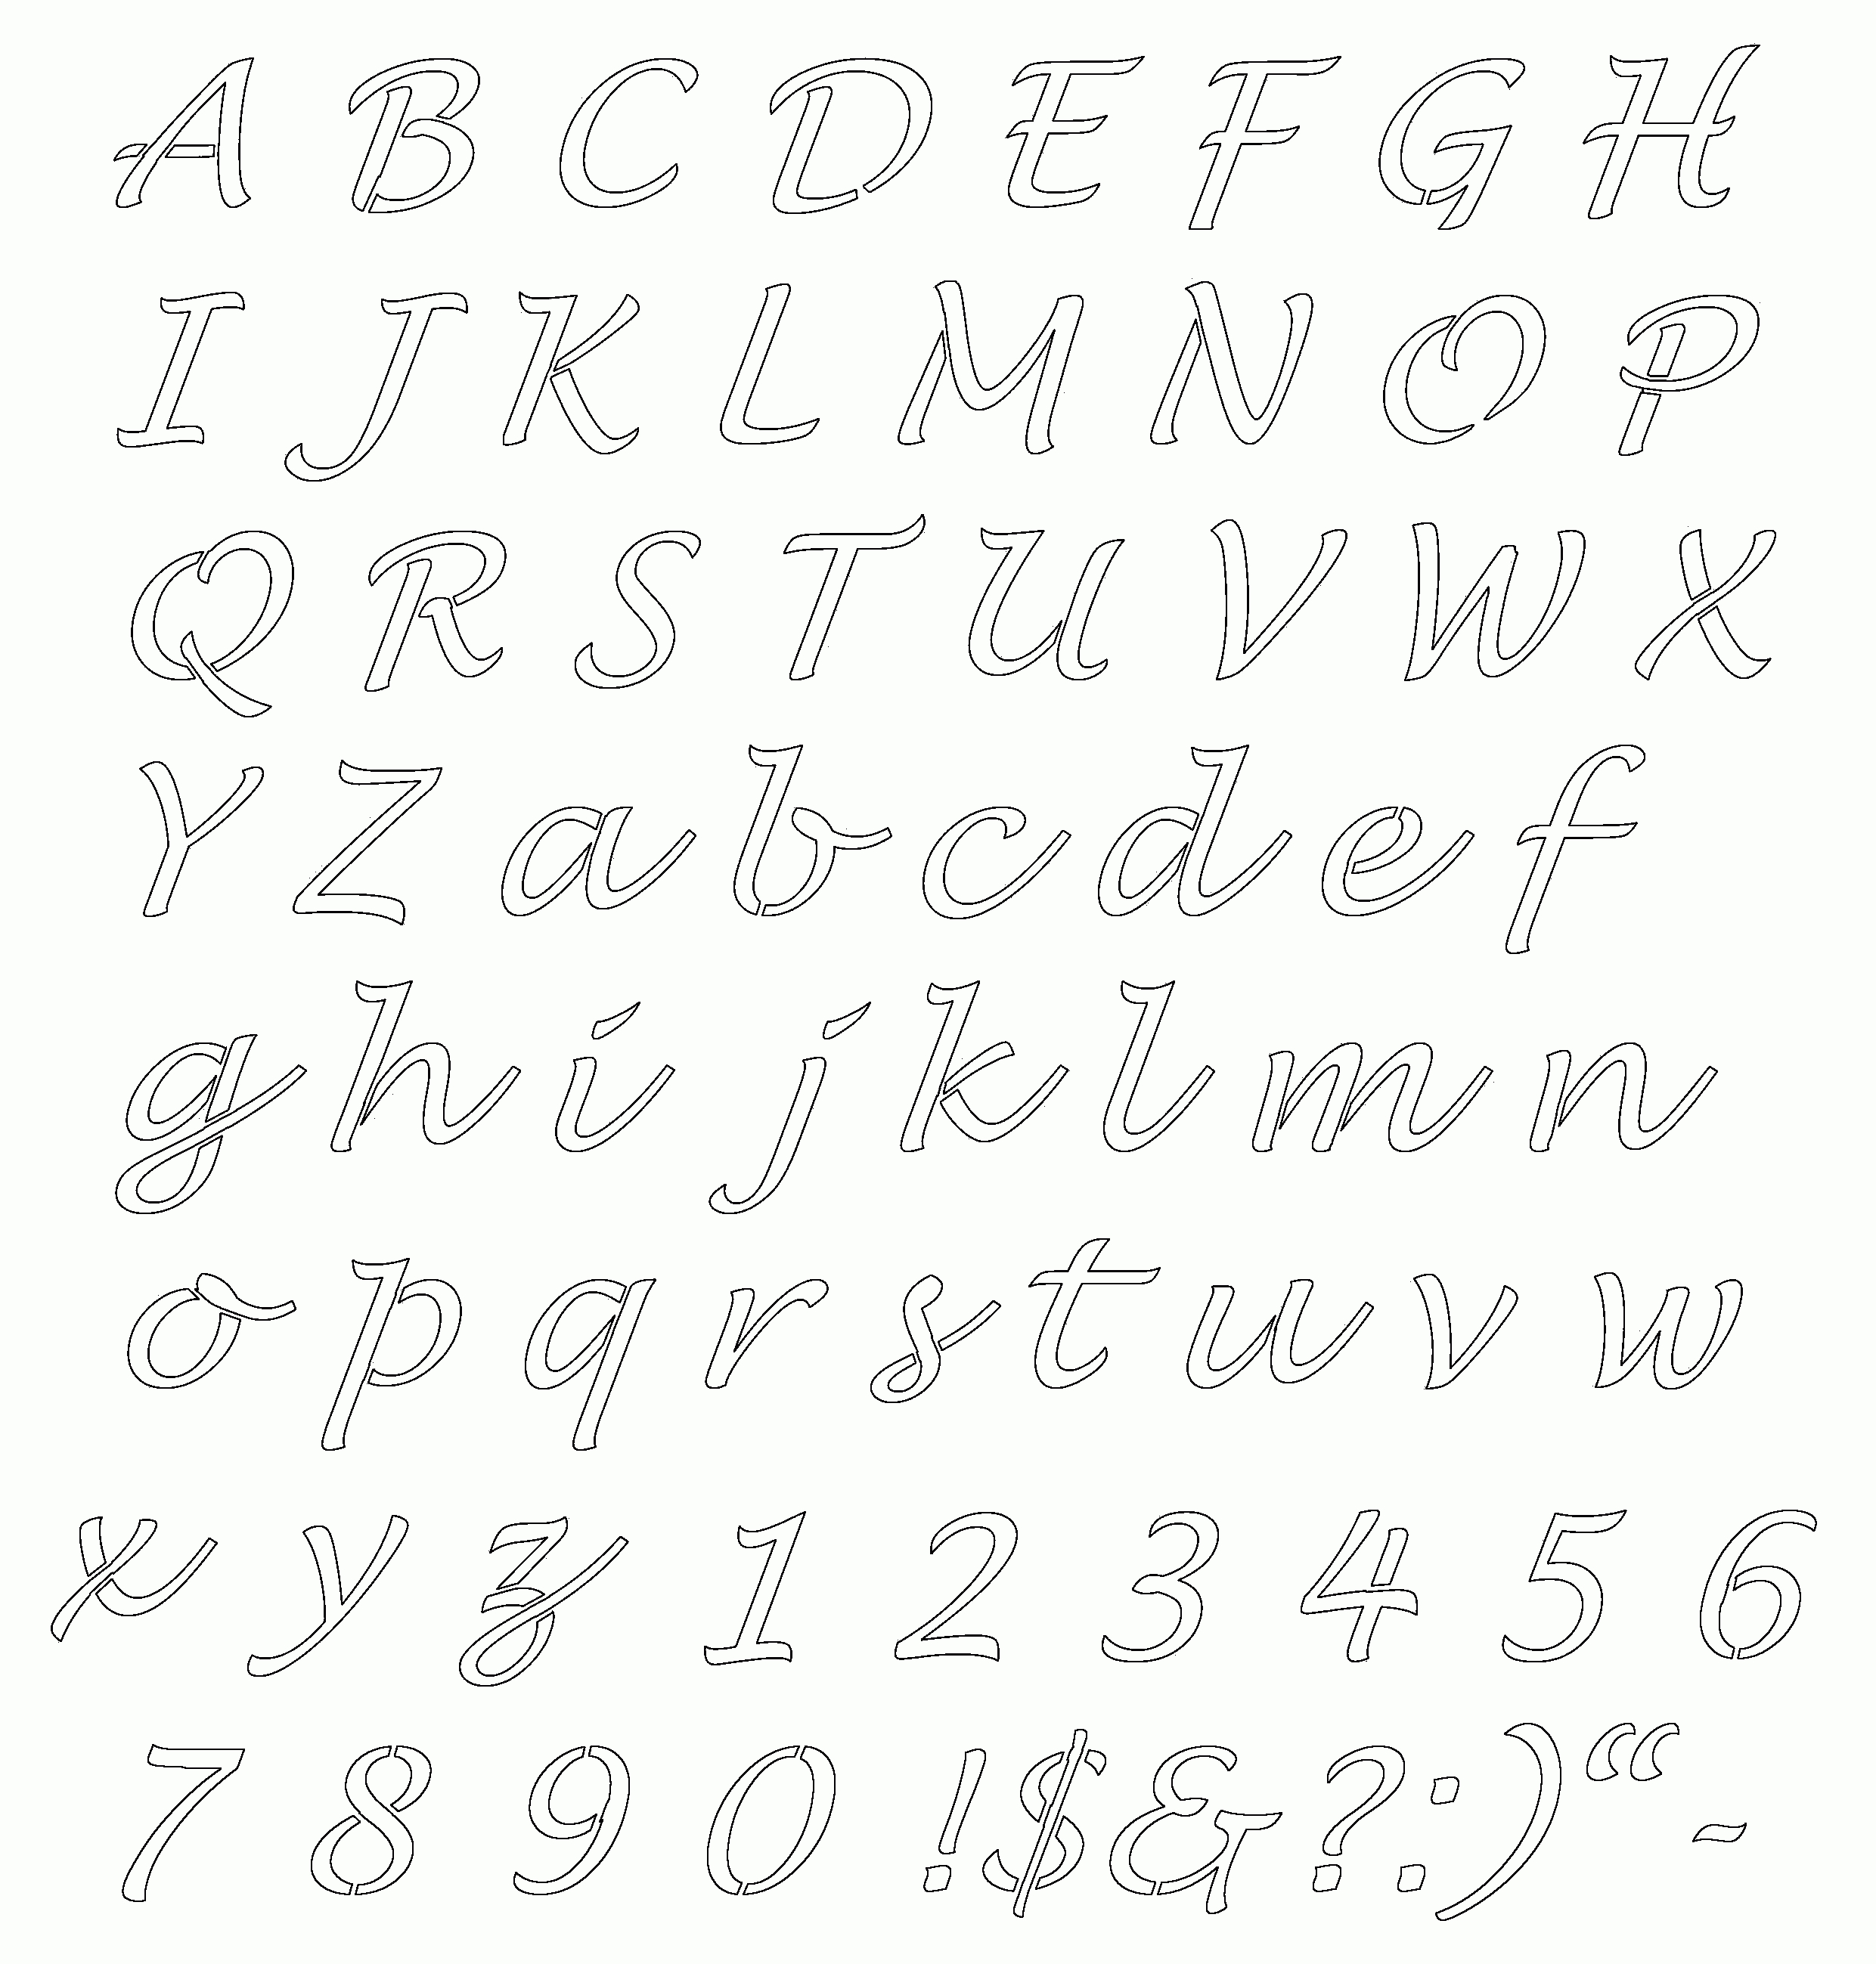 Free Online Alphabet Templates | Stencils Free Printable Alphabetaug - Free Printable Letter Templates